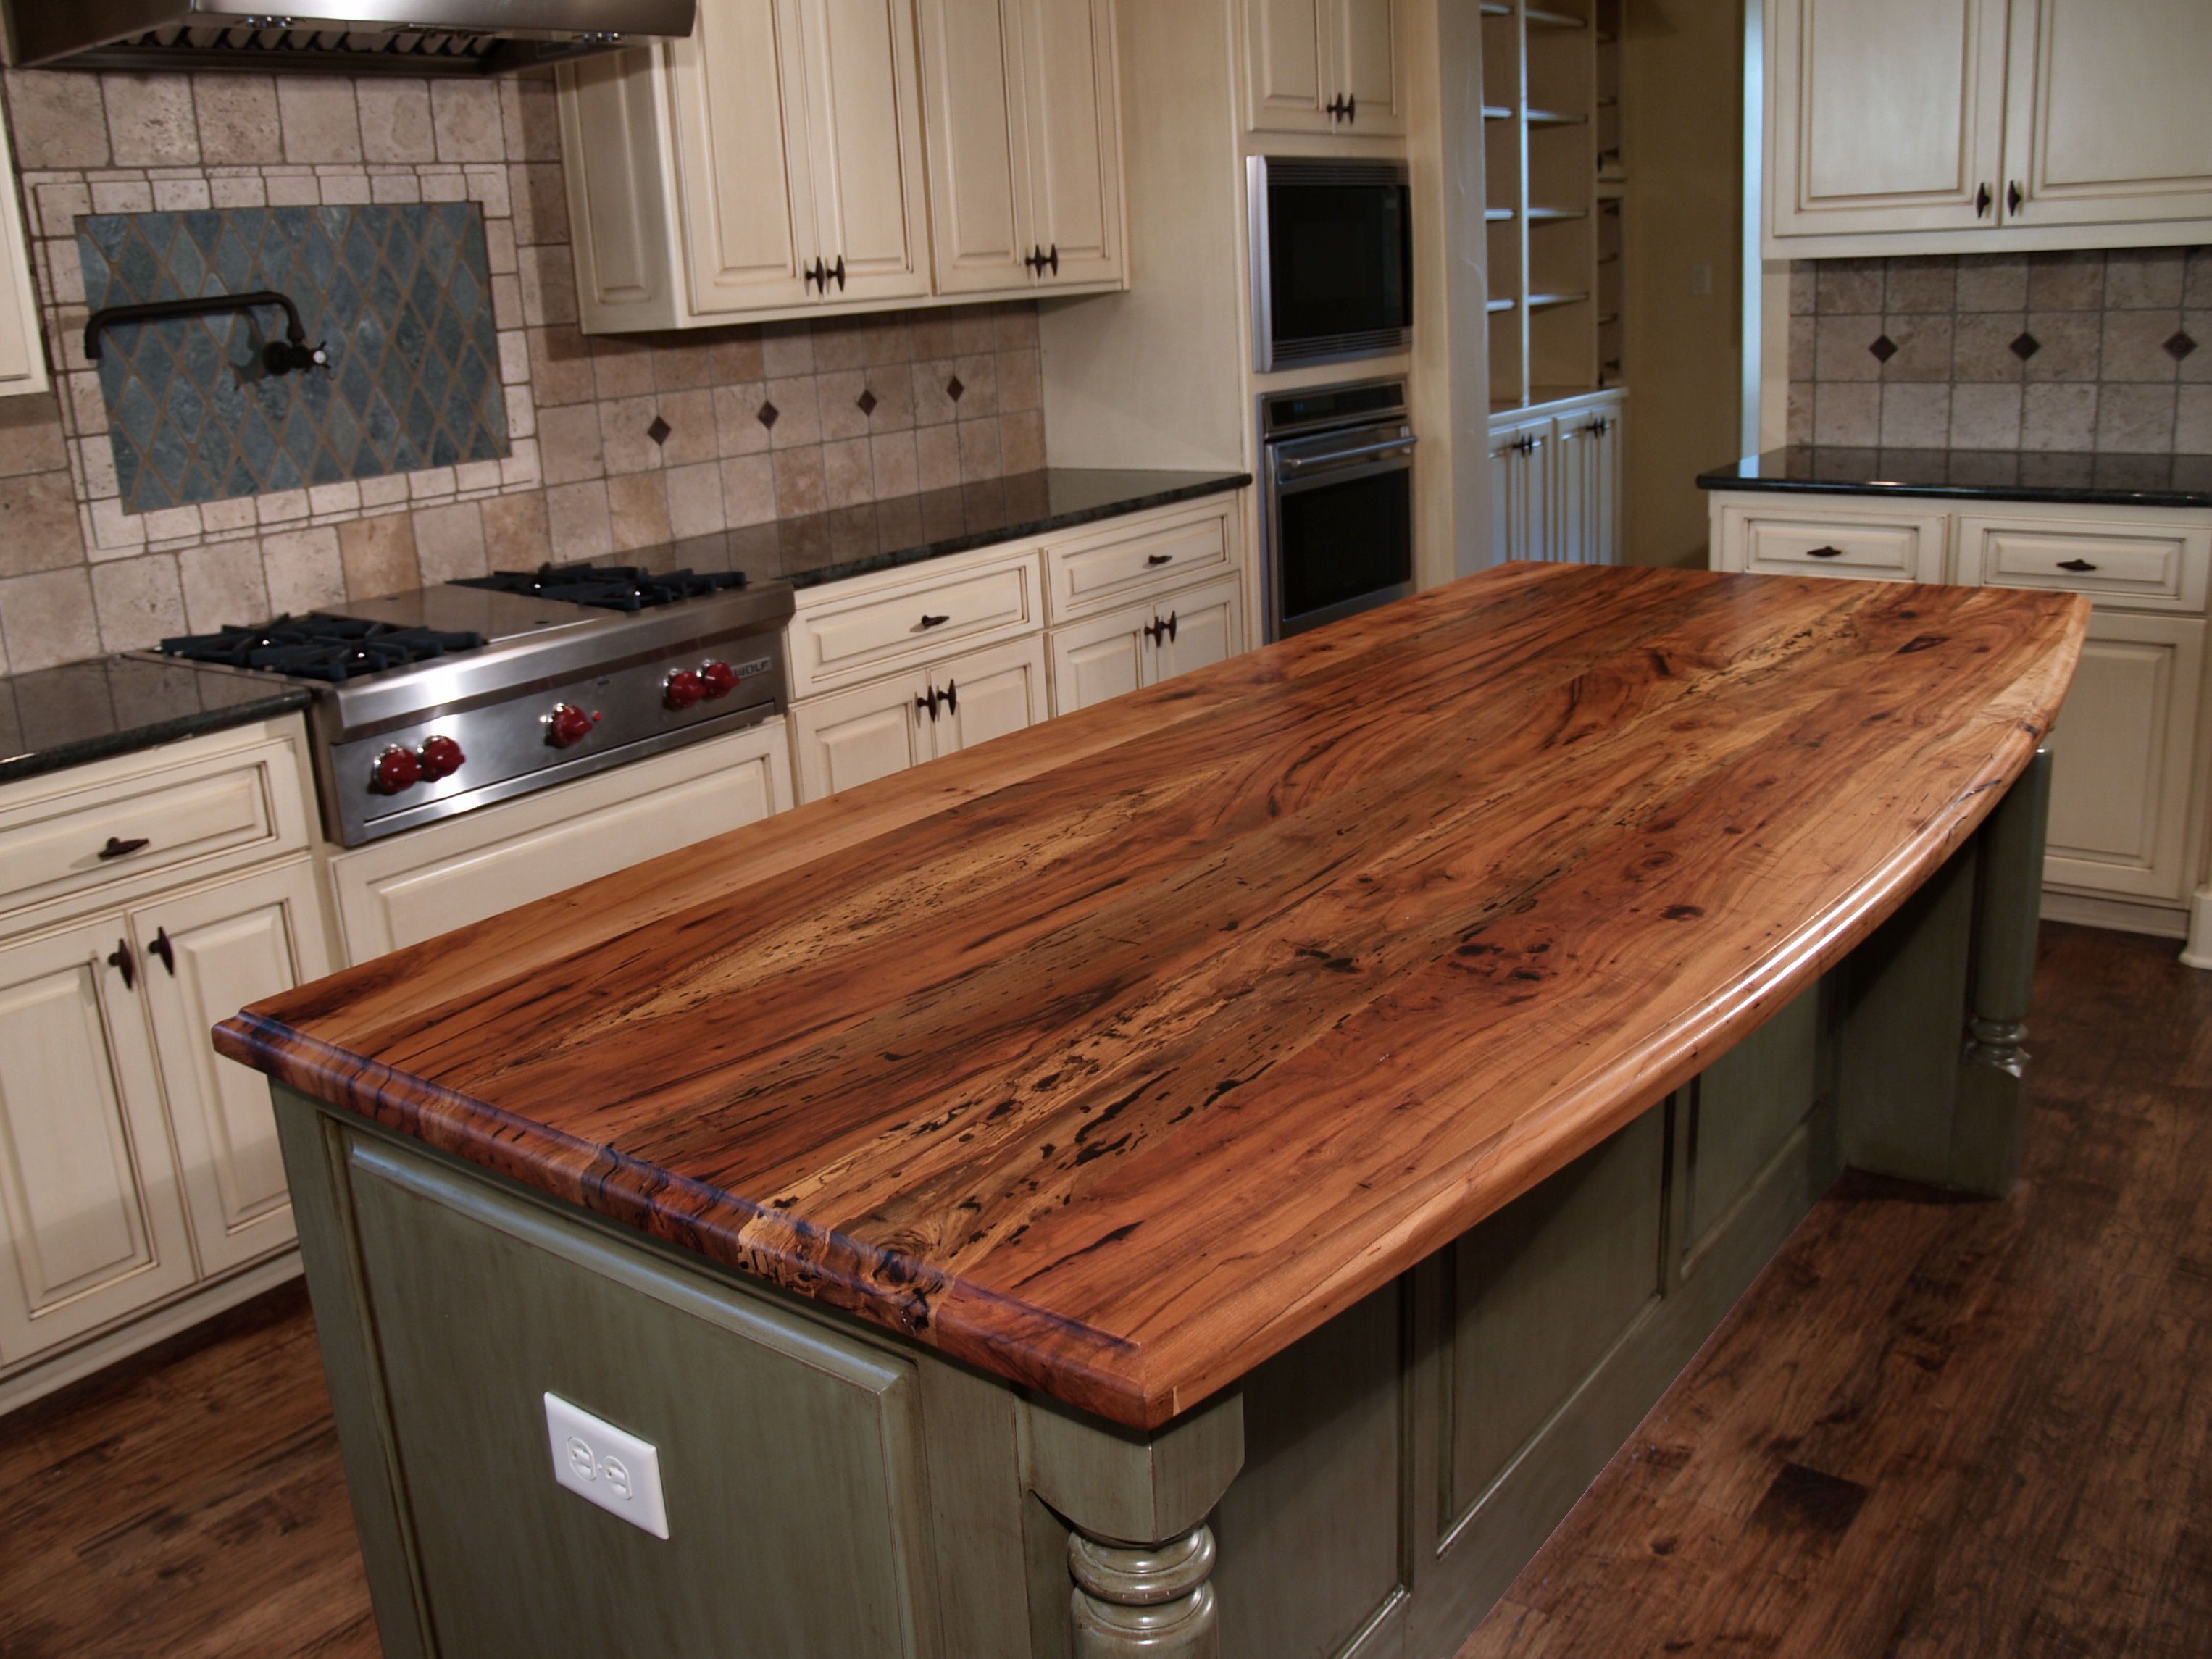 Spalted Pecan Wood Countertop Photo Gallery By Devos Custom